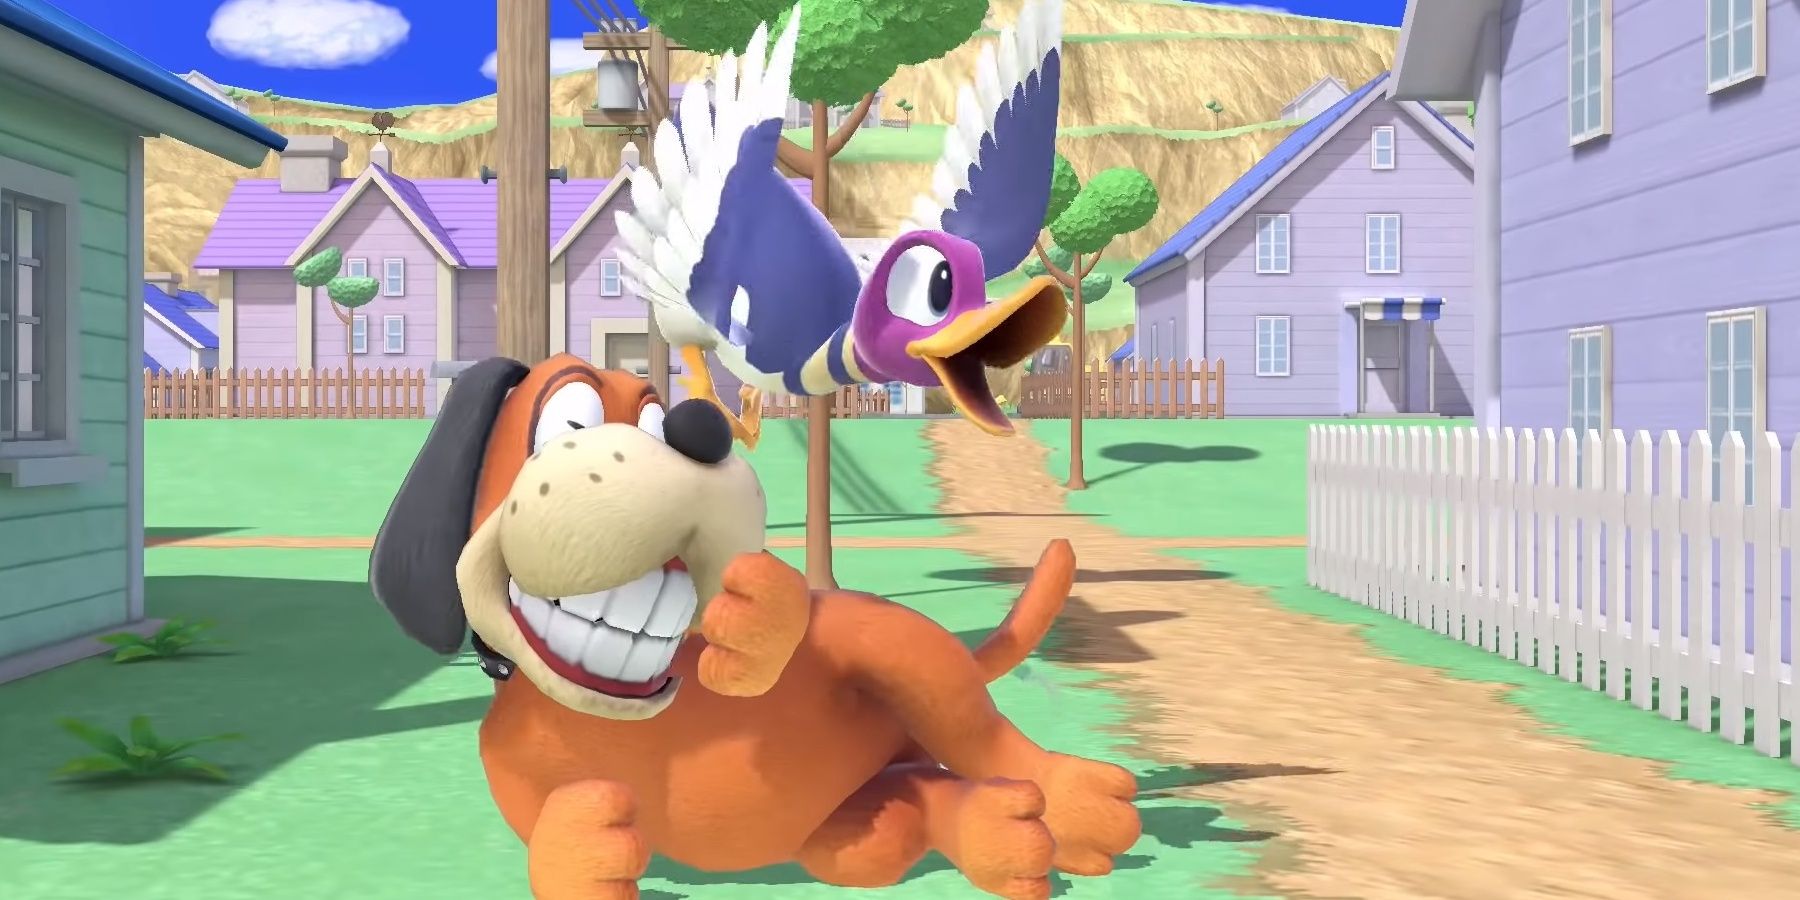 Smash Bros duck hunt dog smiling 